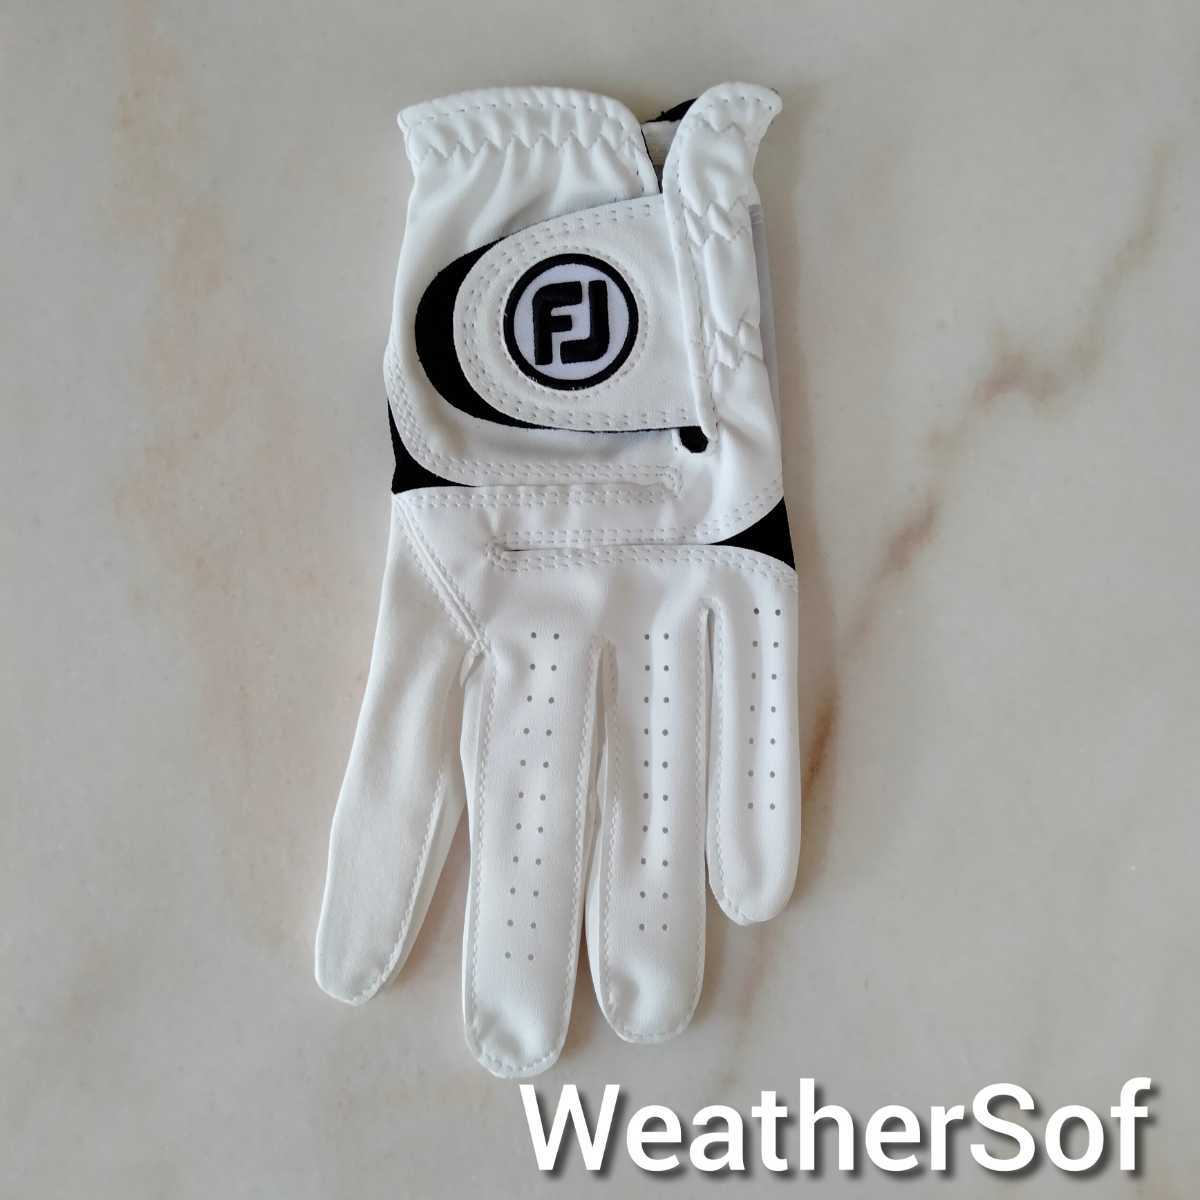 Fj weather sof23cm белый 4 шт. комплект foot Joy Golf перчатка ue The -sof новый товар бесплатный анонимность рассылка бесплатная доставка 